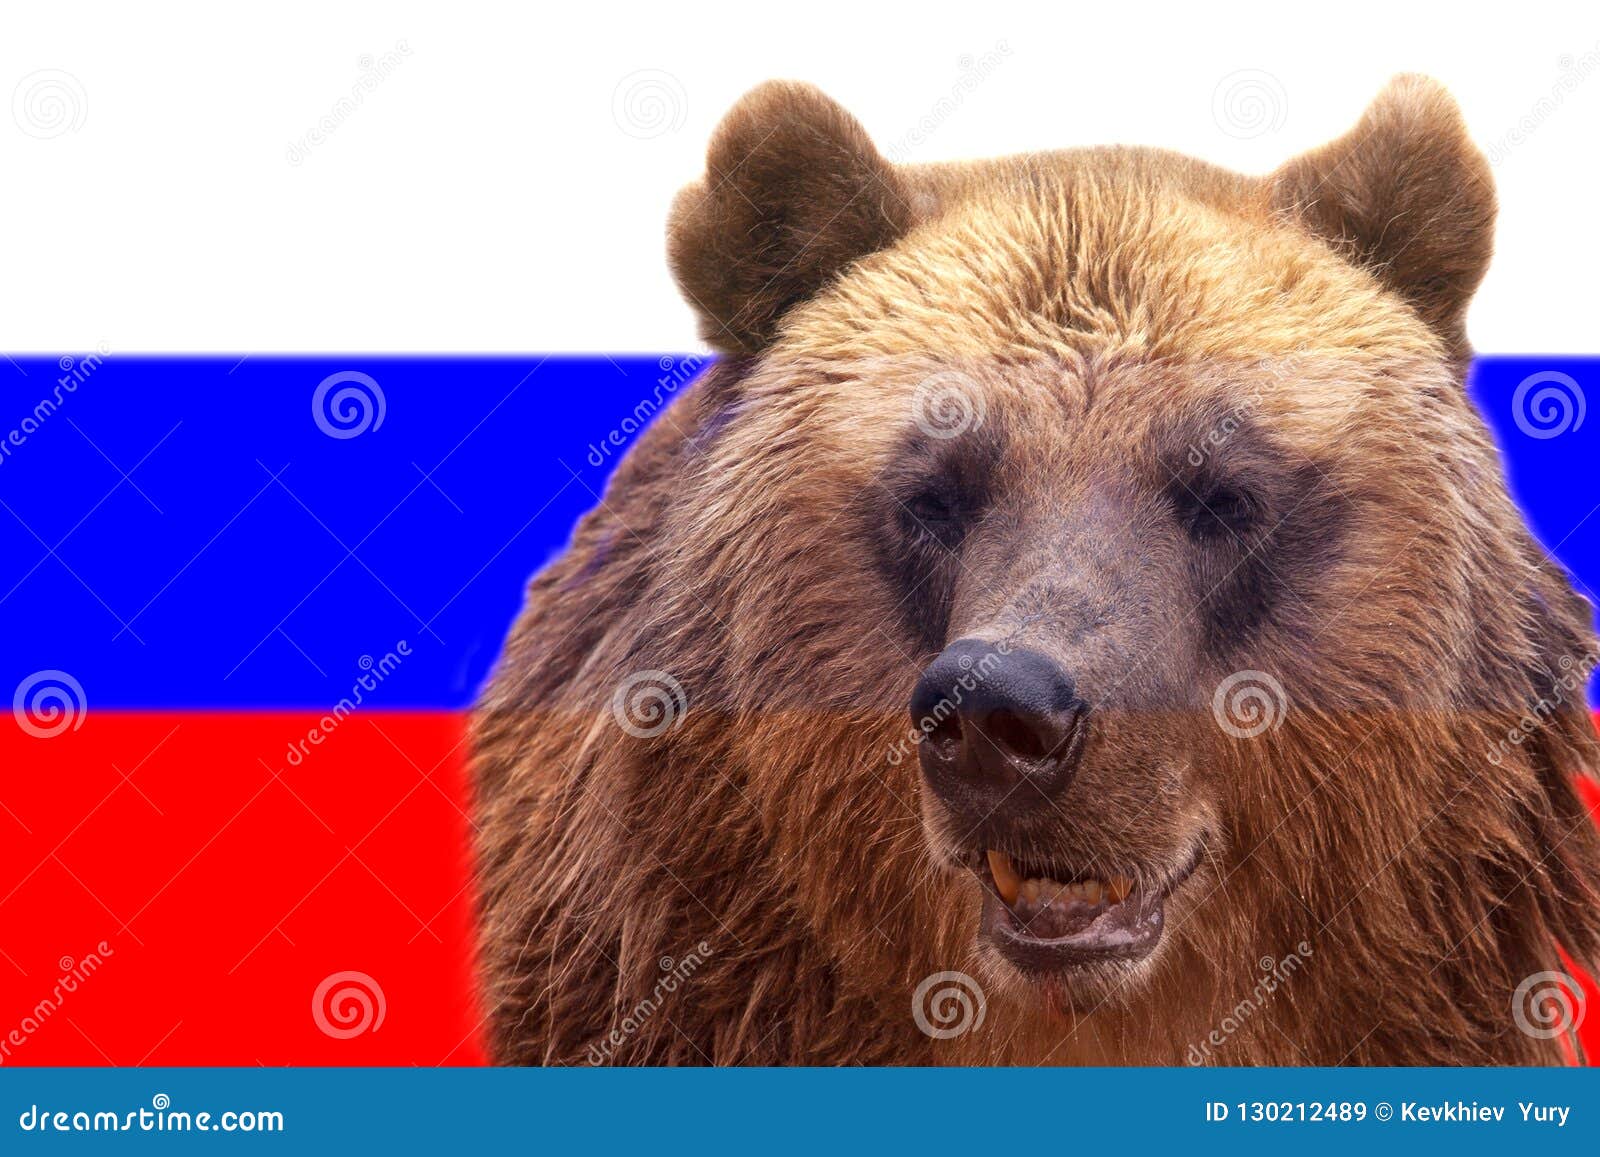 Неофициальный символ россии медведь